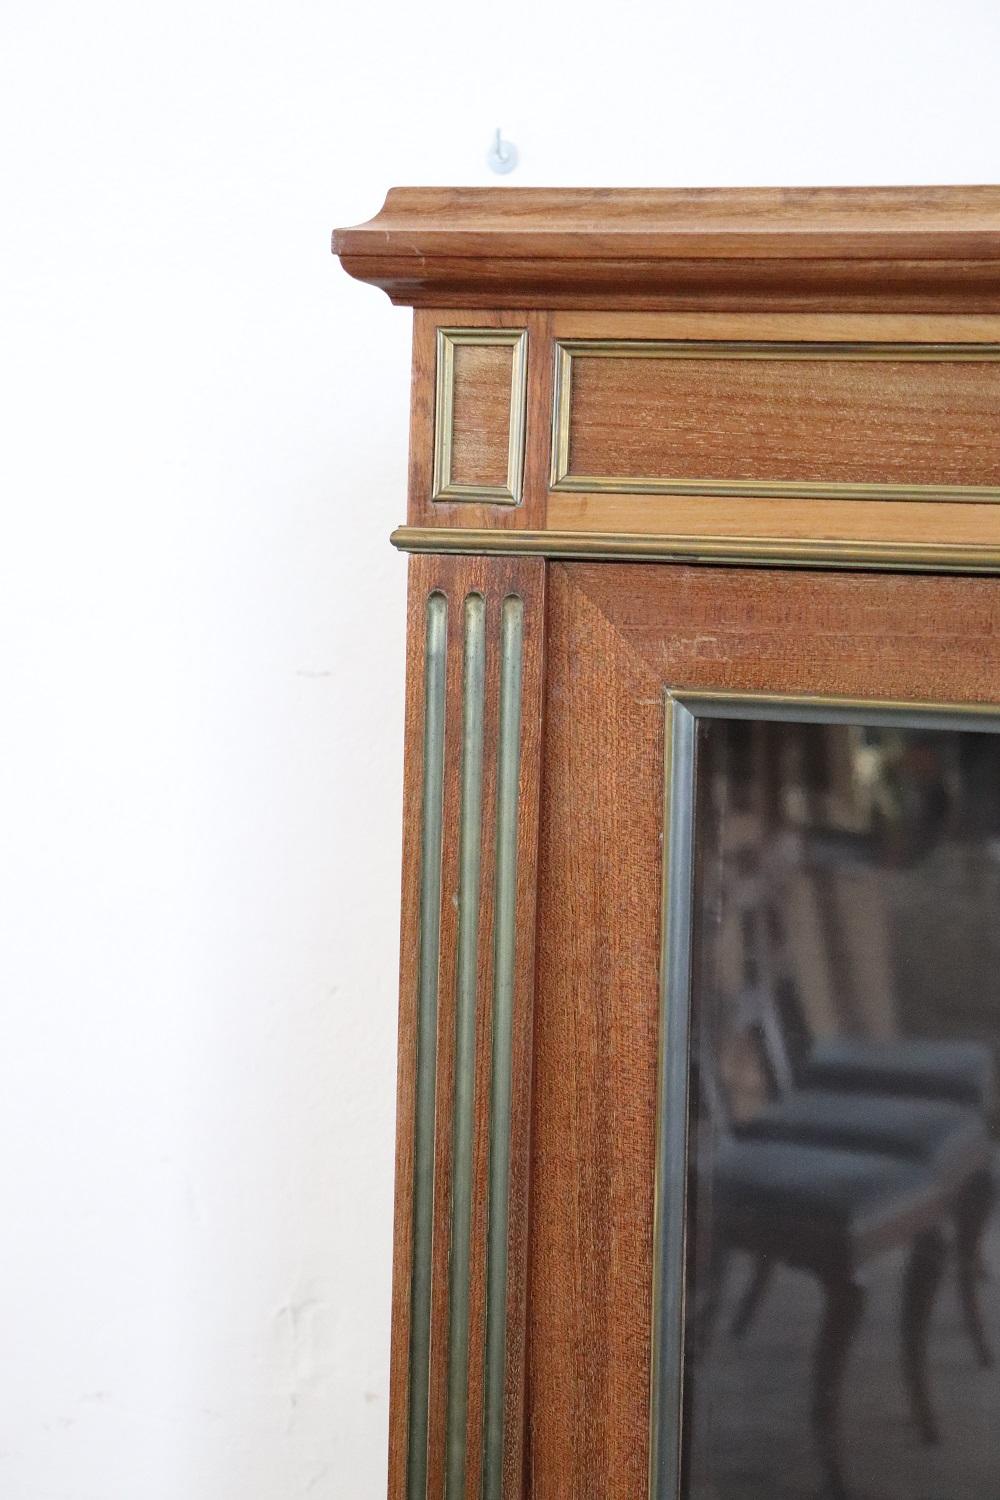 Die Vitrine im Louis-XVI-Stil ist aus feinem Mahagoniholz gefertigt. Verziert mit kostbaren Rahmen aus goldenem Messing. Zwischen drei Einlegeböden, die auf die gewünschte Höhe gebracht werden können. Für die Präsentation Ihrer wertvollen Objekte